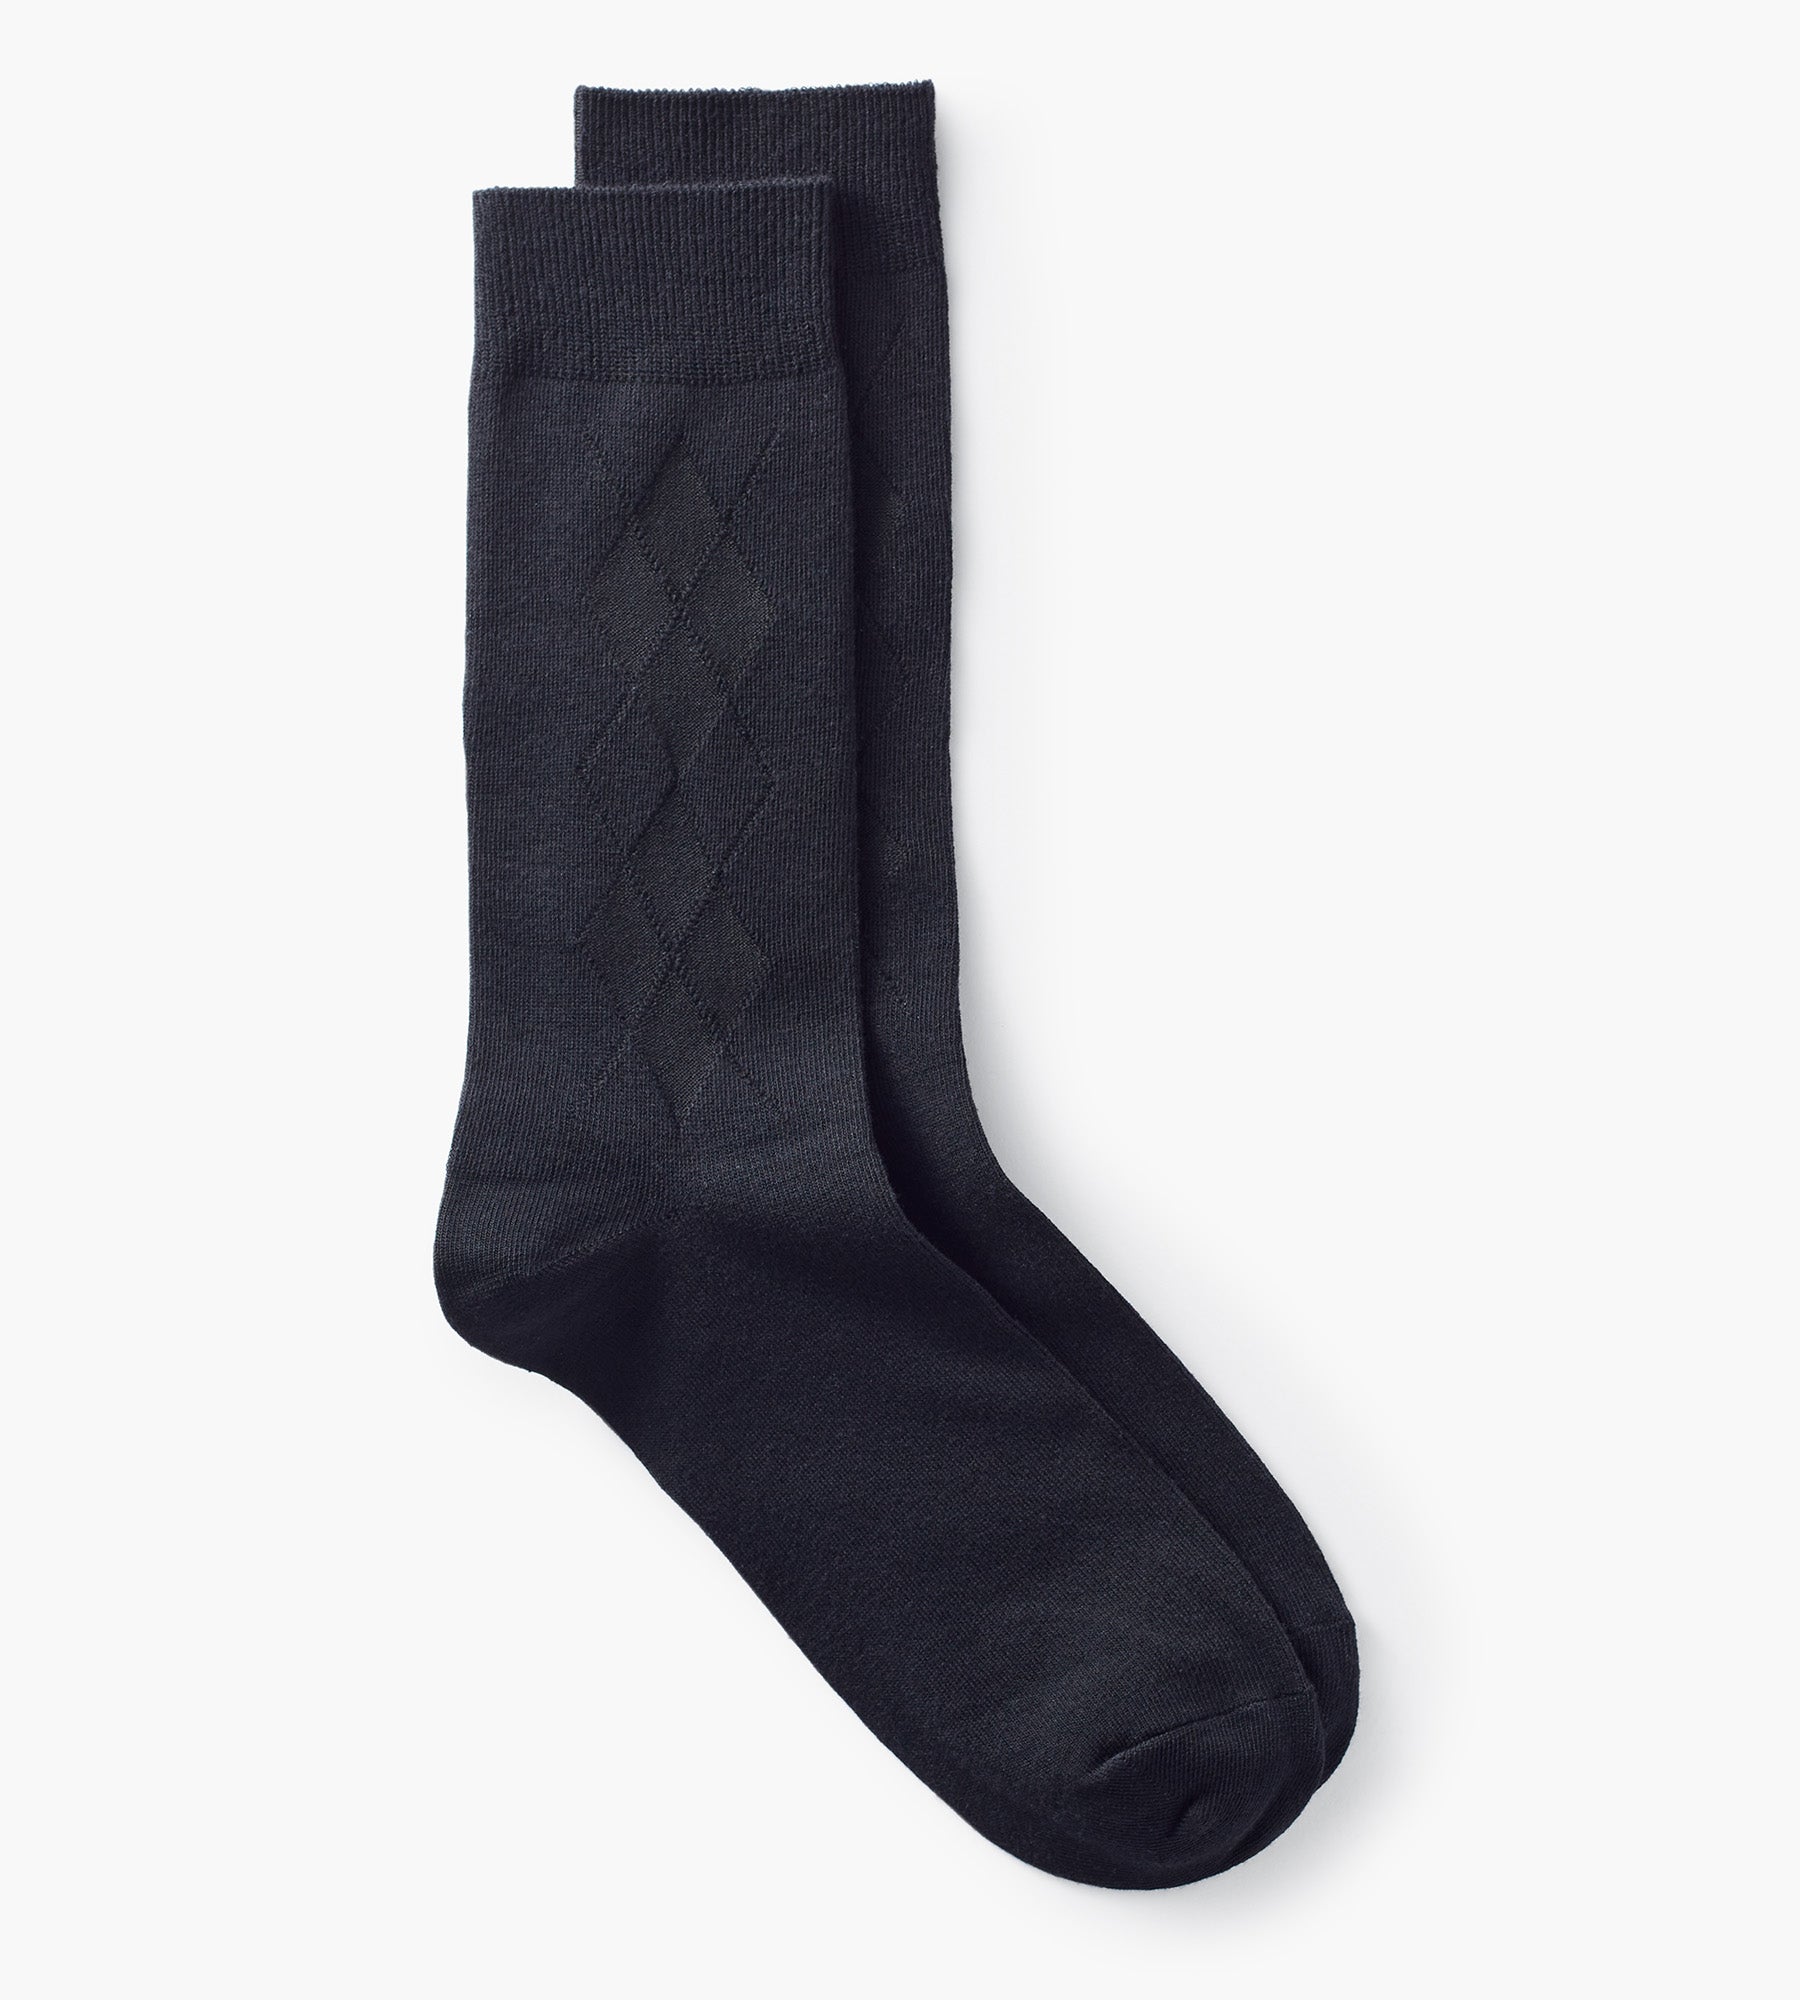 Argyle Socks product